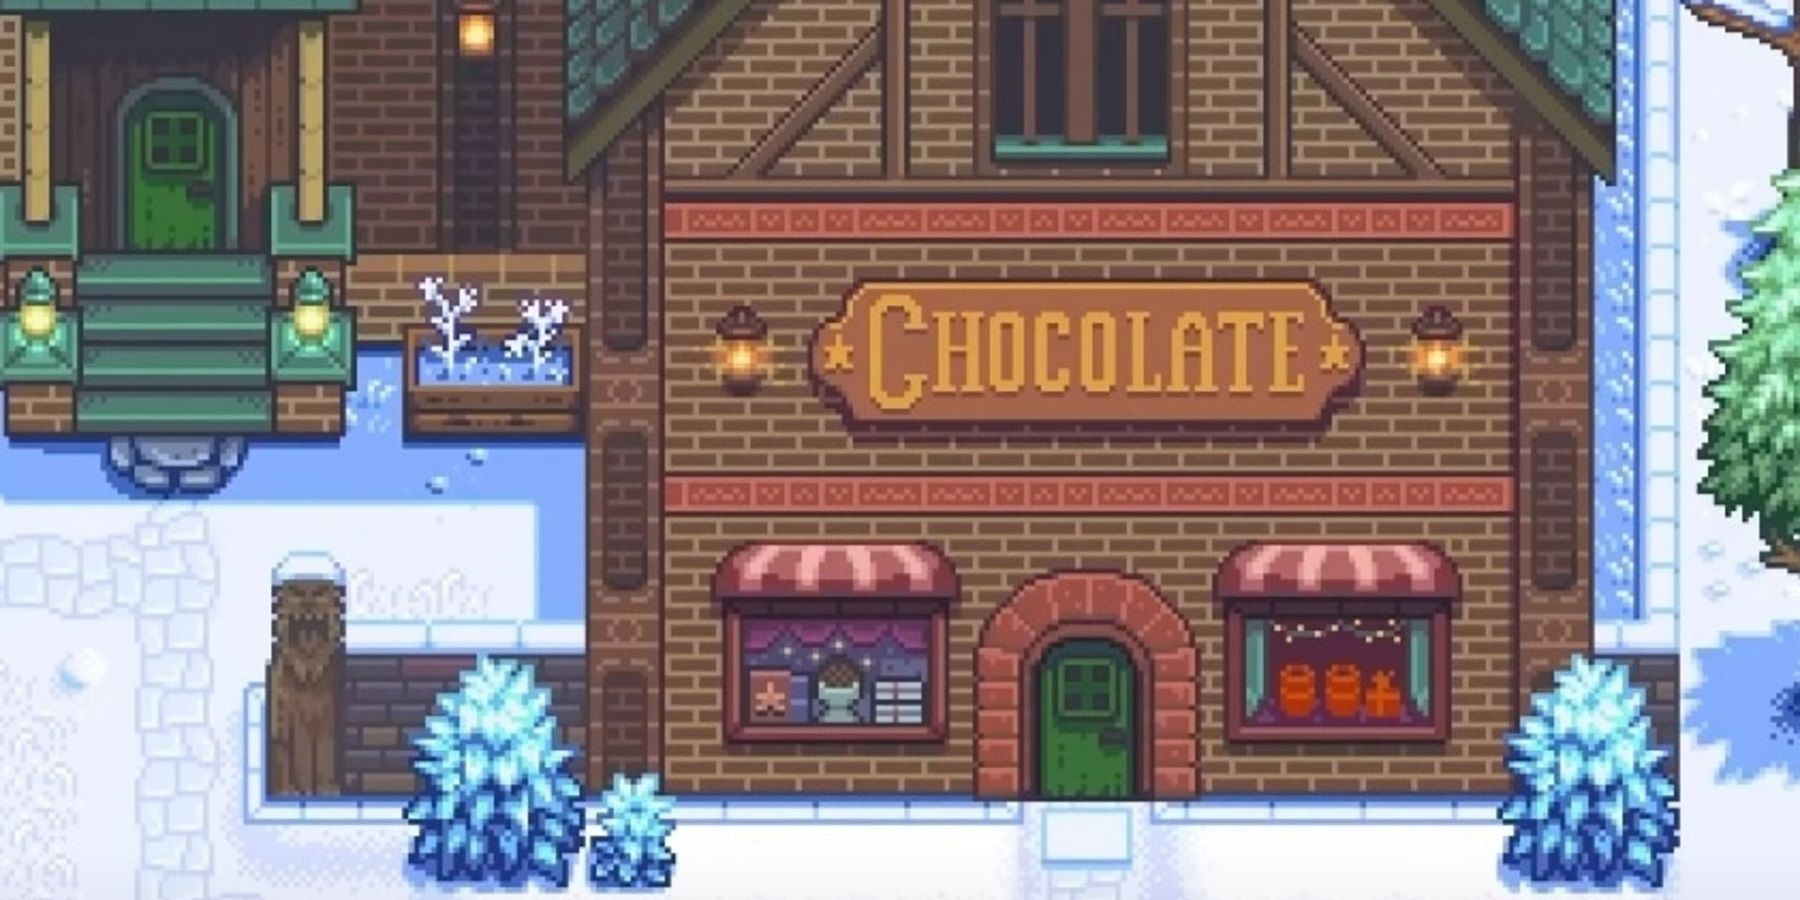 haunted chocolatier shop front feature